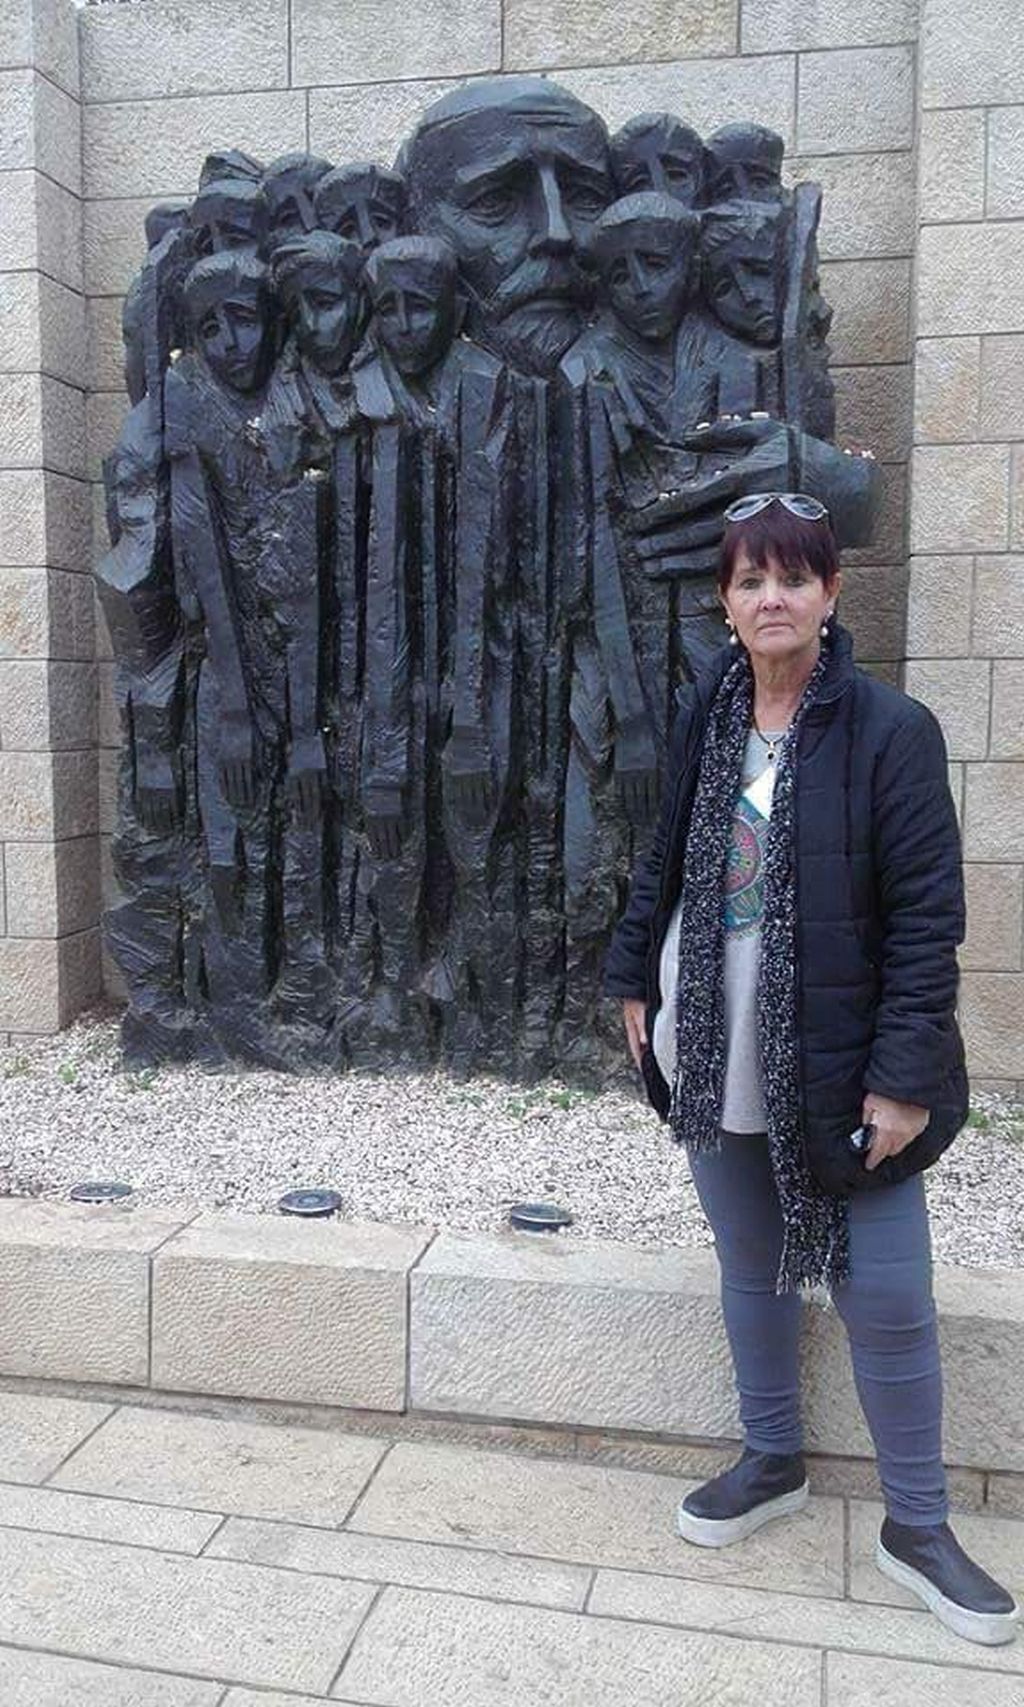 Gisela junto al monumento a Janusz Korzack en Yad Vashem. "Un referente humano, un referente pedagogo, un ser de luz", afirma.